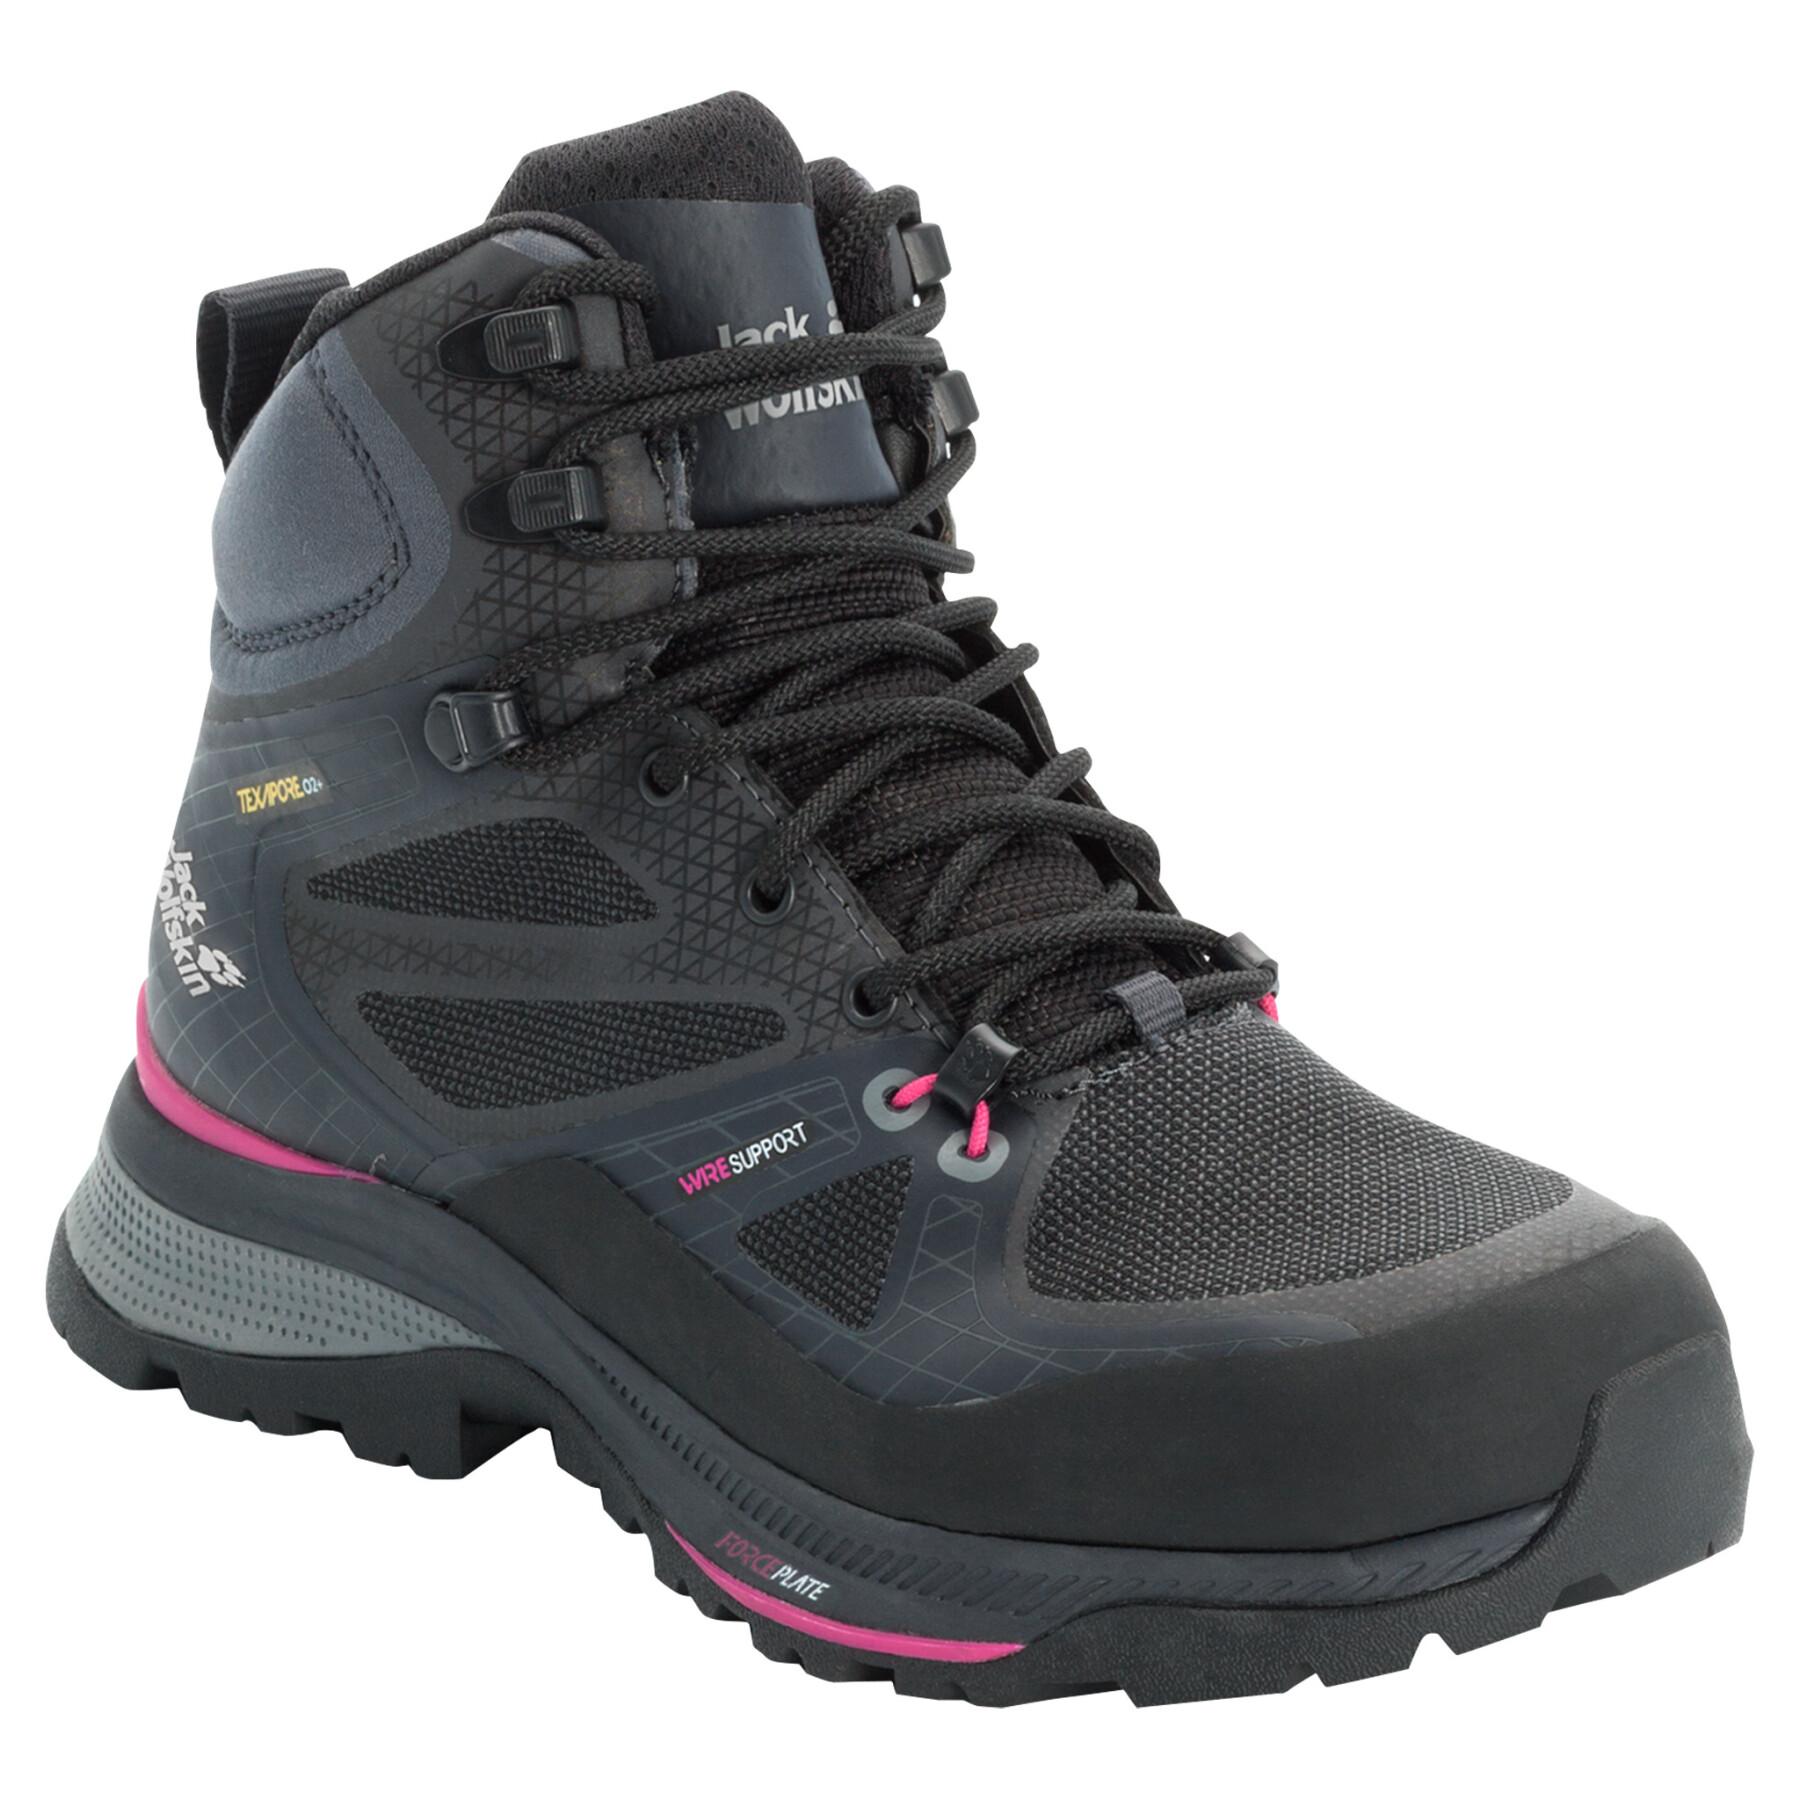 Women's hiking shoes Jack Wolfskin Force Trekker Texaporeid Mid